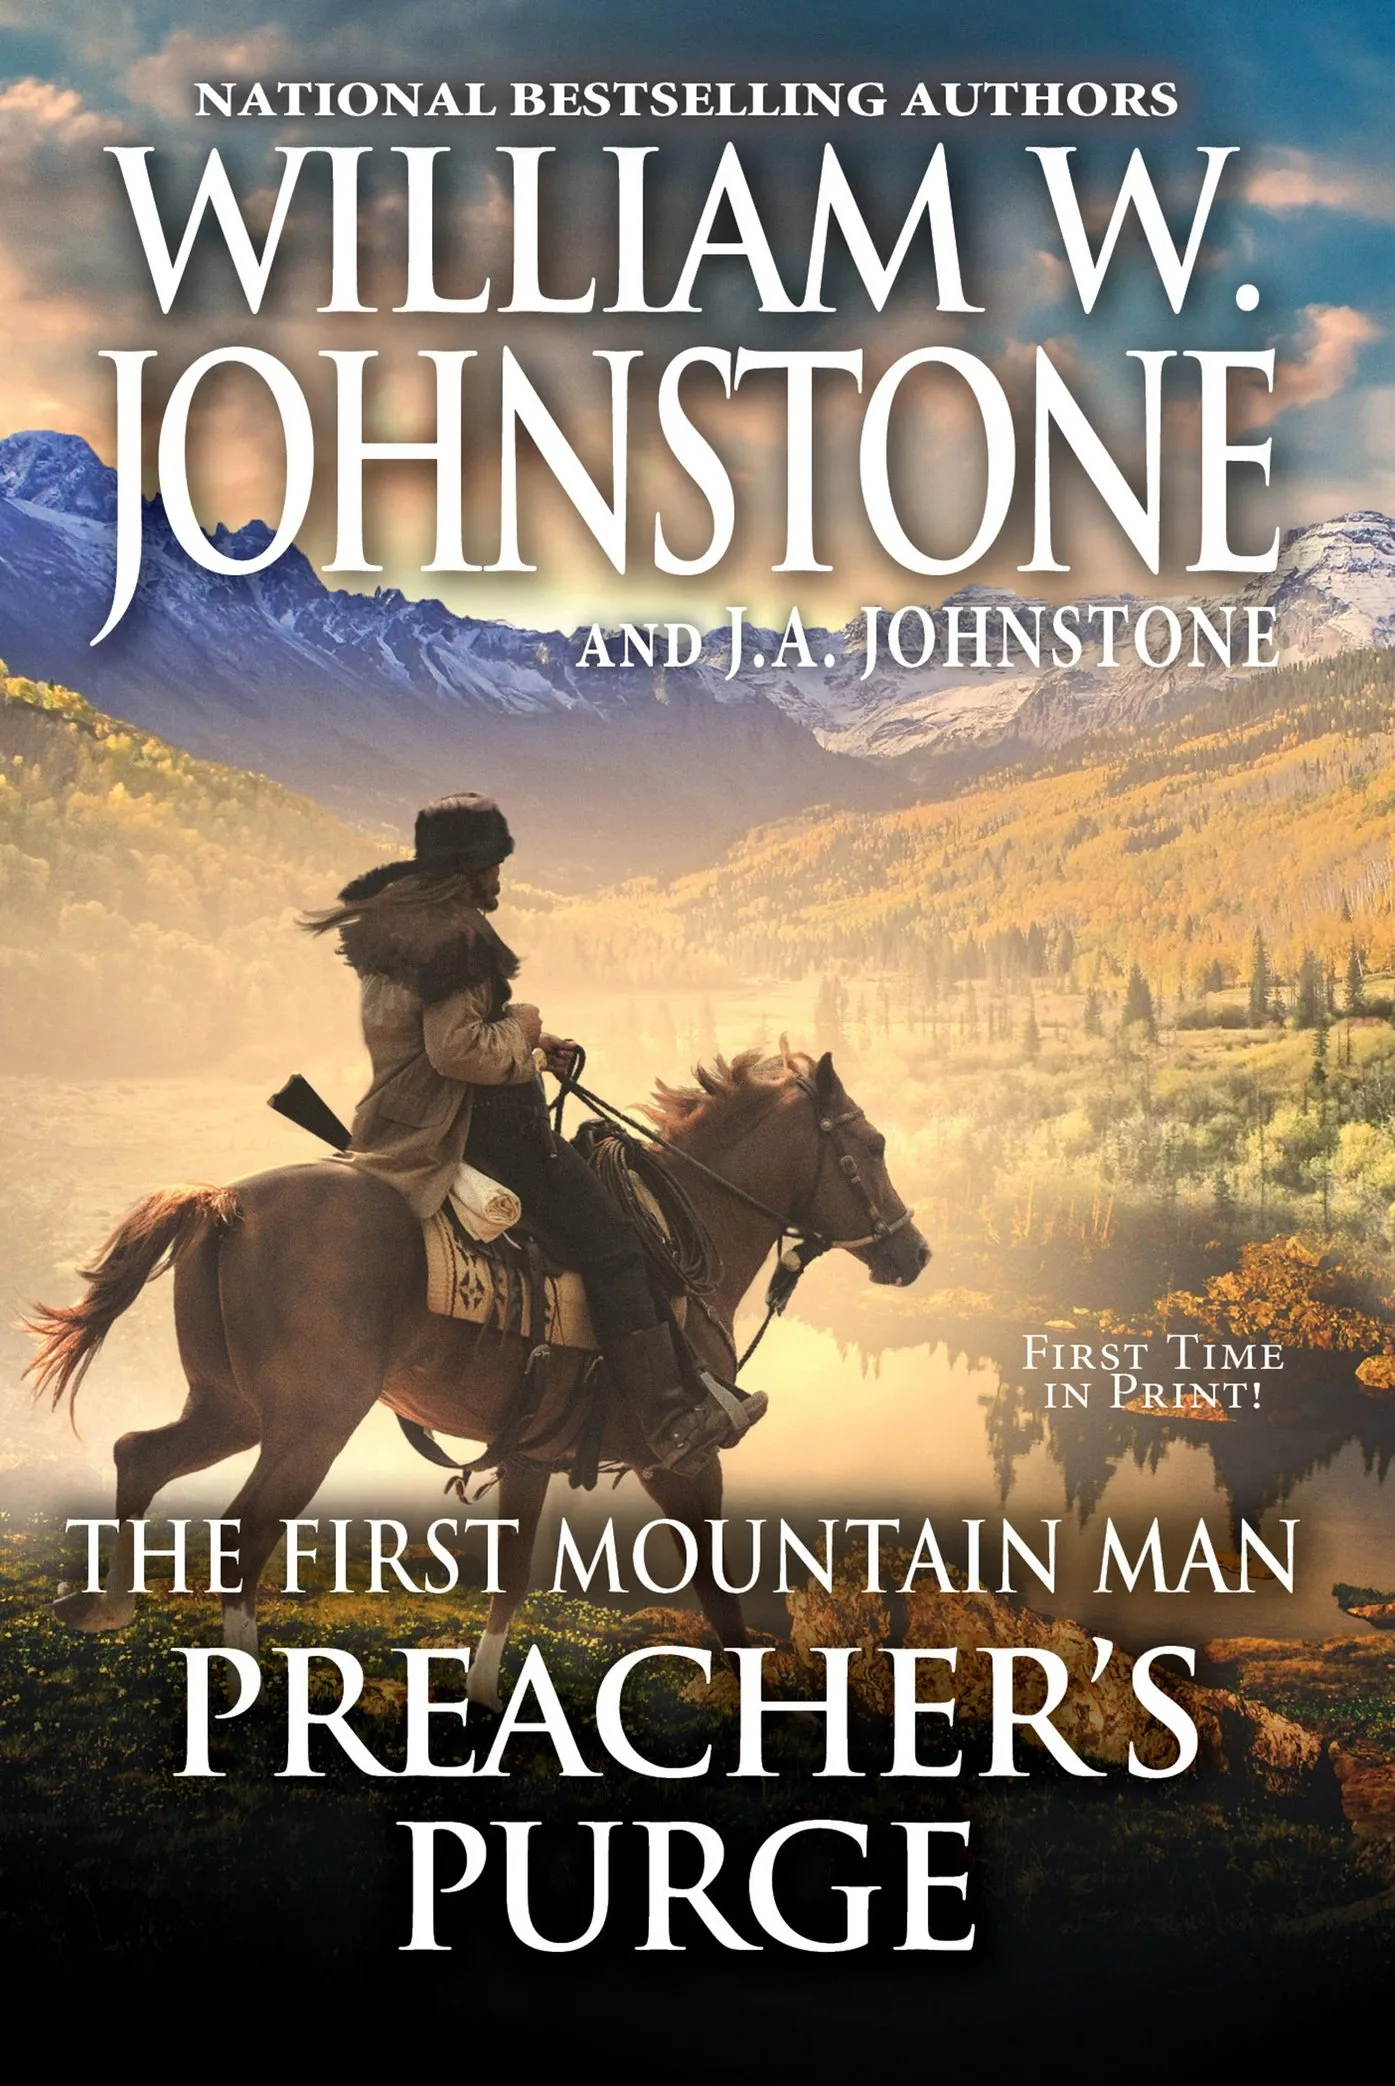 Preacher's Purge (The First Mountain Man #29)